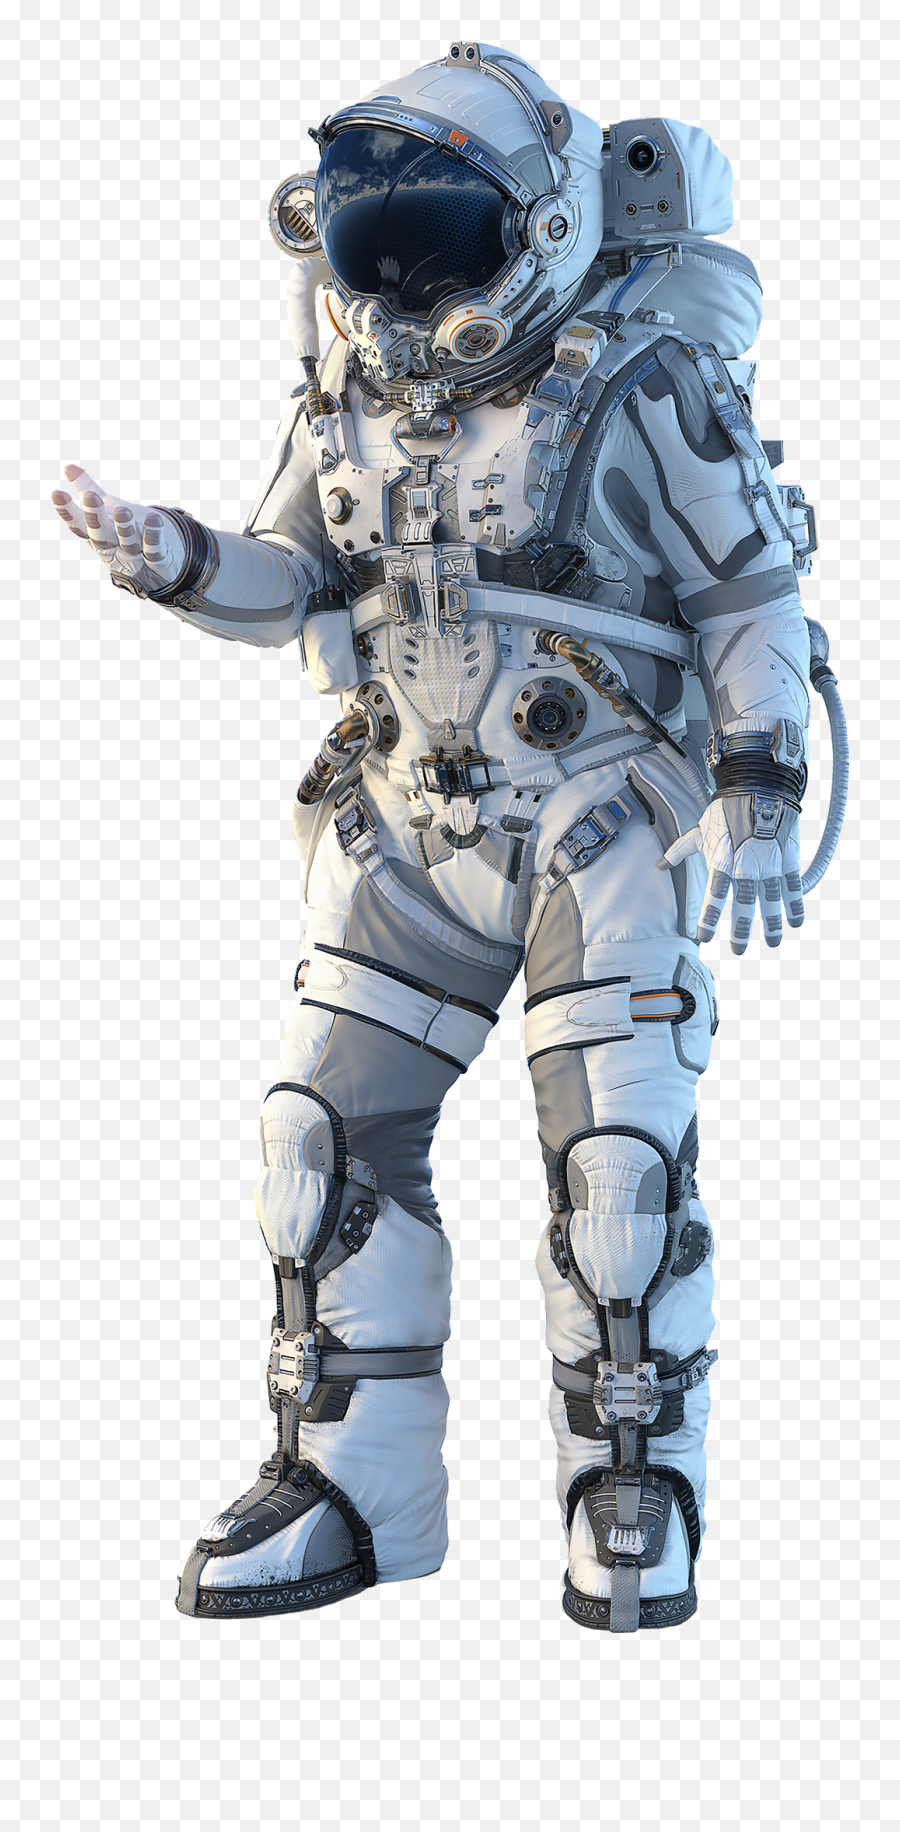 Astronaut Suit Png Transparent Images - Astronaut Holding World,Space Suit Png